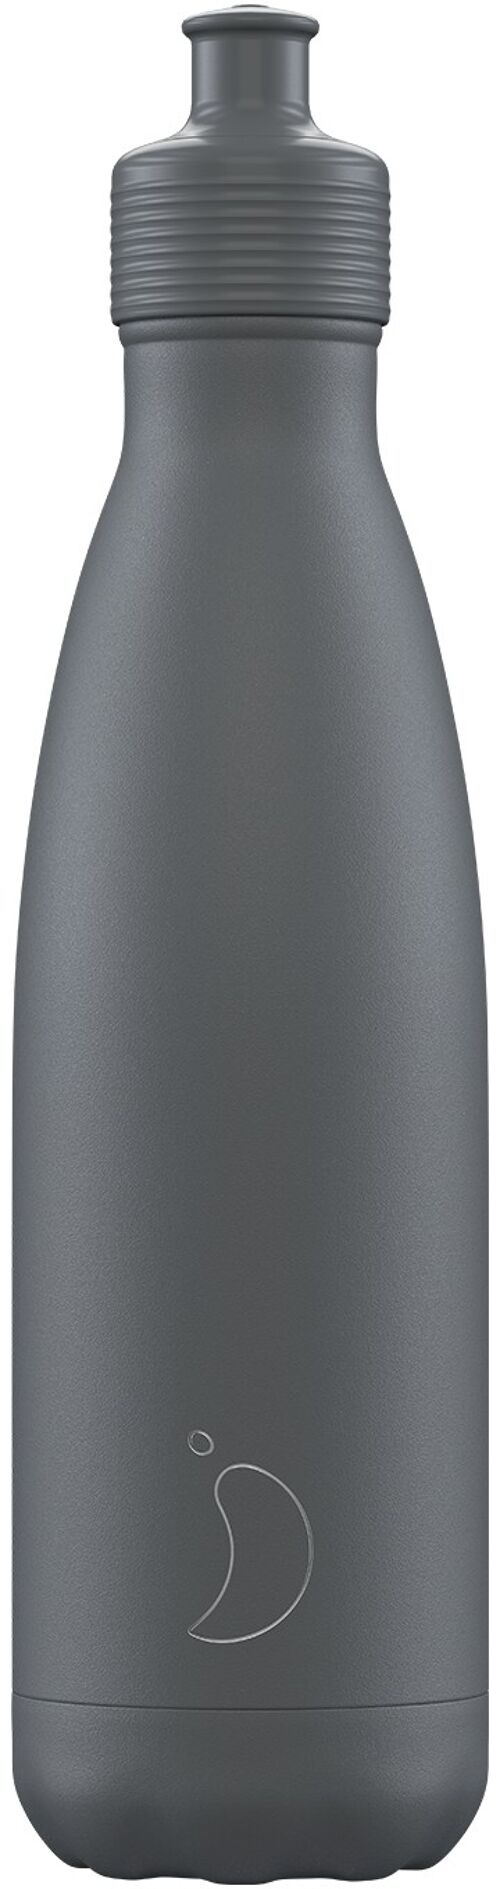 Bottle-500ml-Monochrome Grey